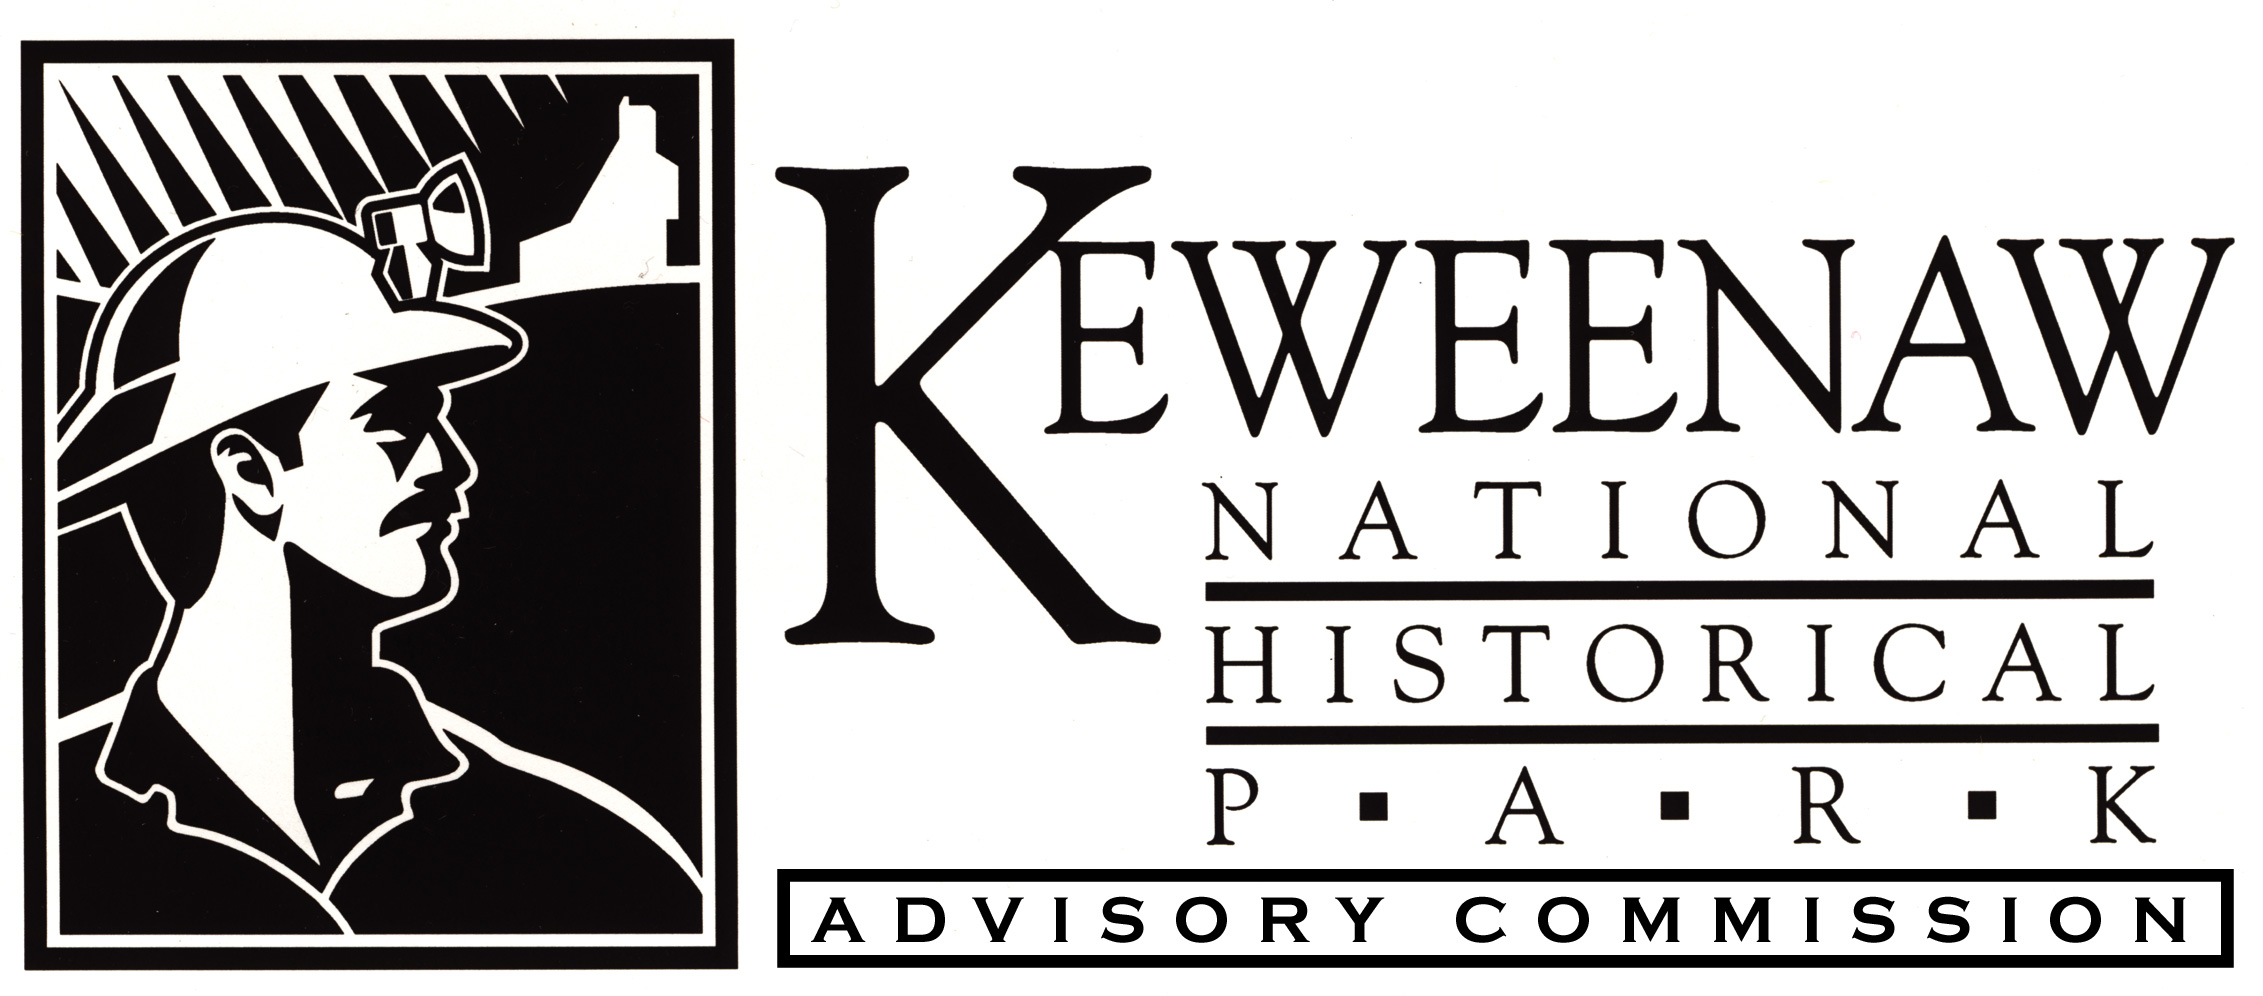 Keweenaw National Historical Park Advisory CommissionLogo